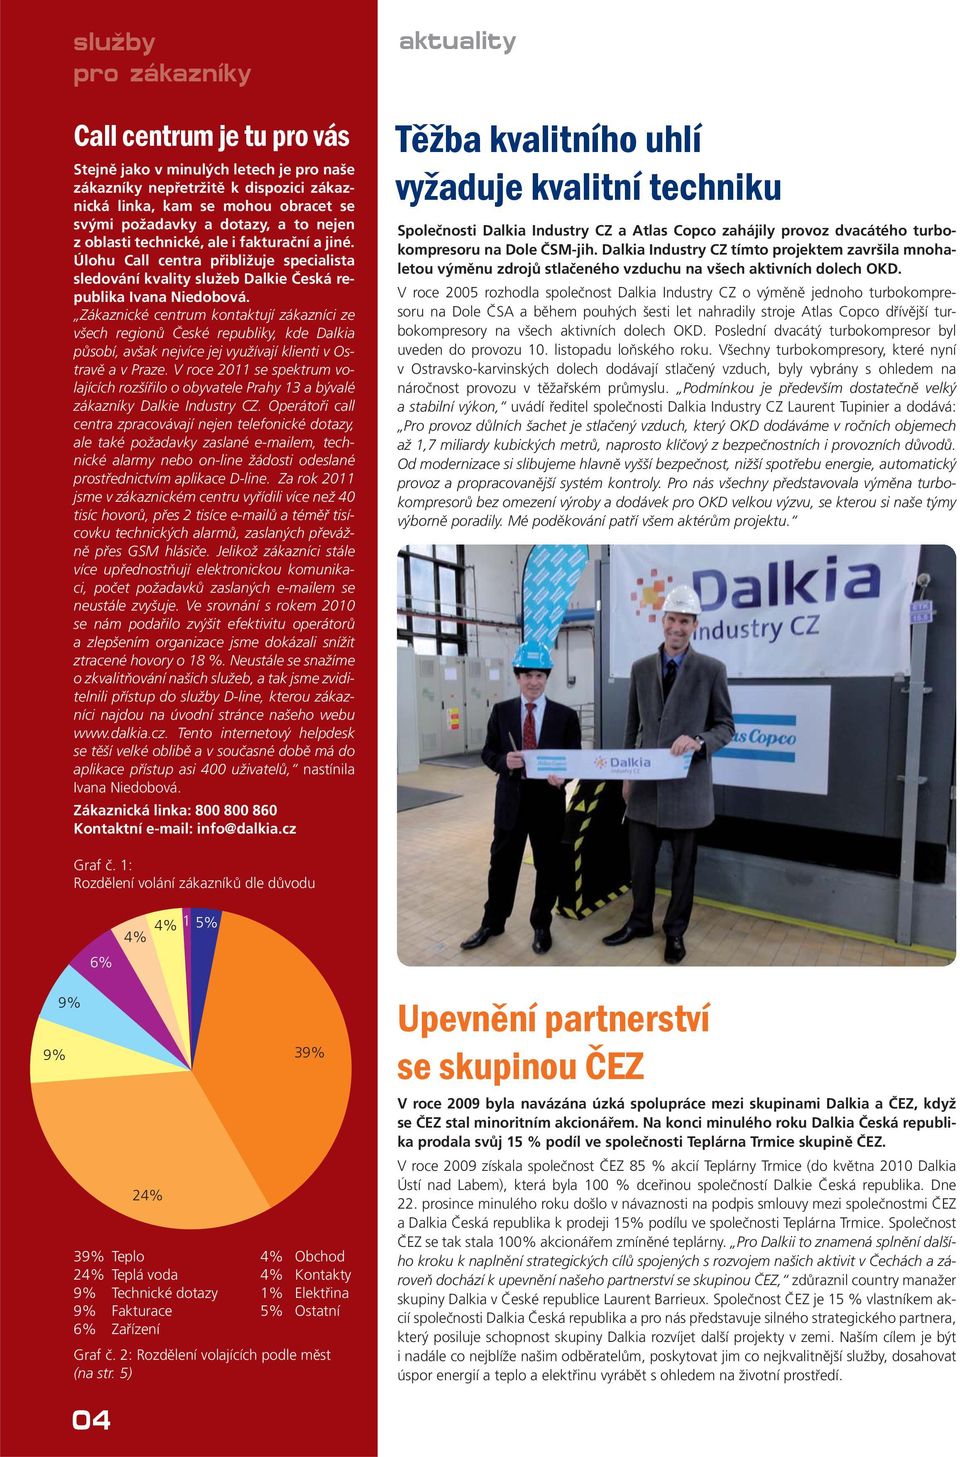 Zákaznické centrum kontaktují zákazníci ze všech regionů České republiky, kde Dalkia působí, avšak nejvíce jej využívají klienti v Ostravě a v Praze.